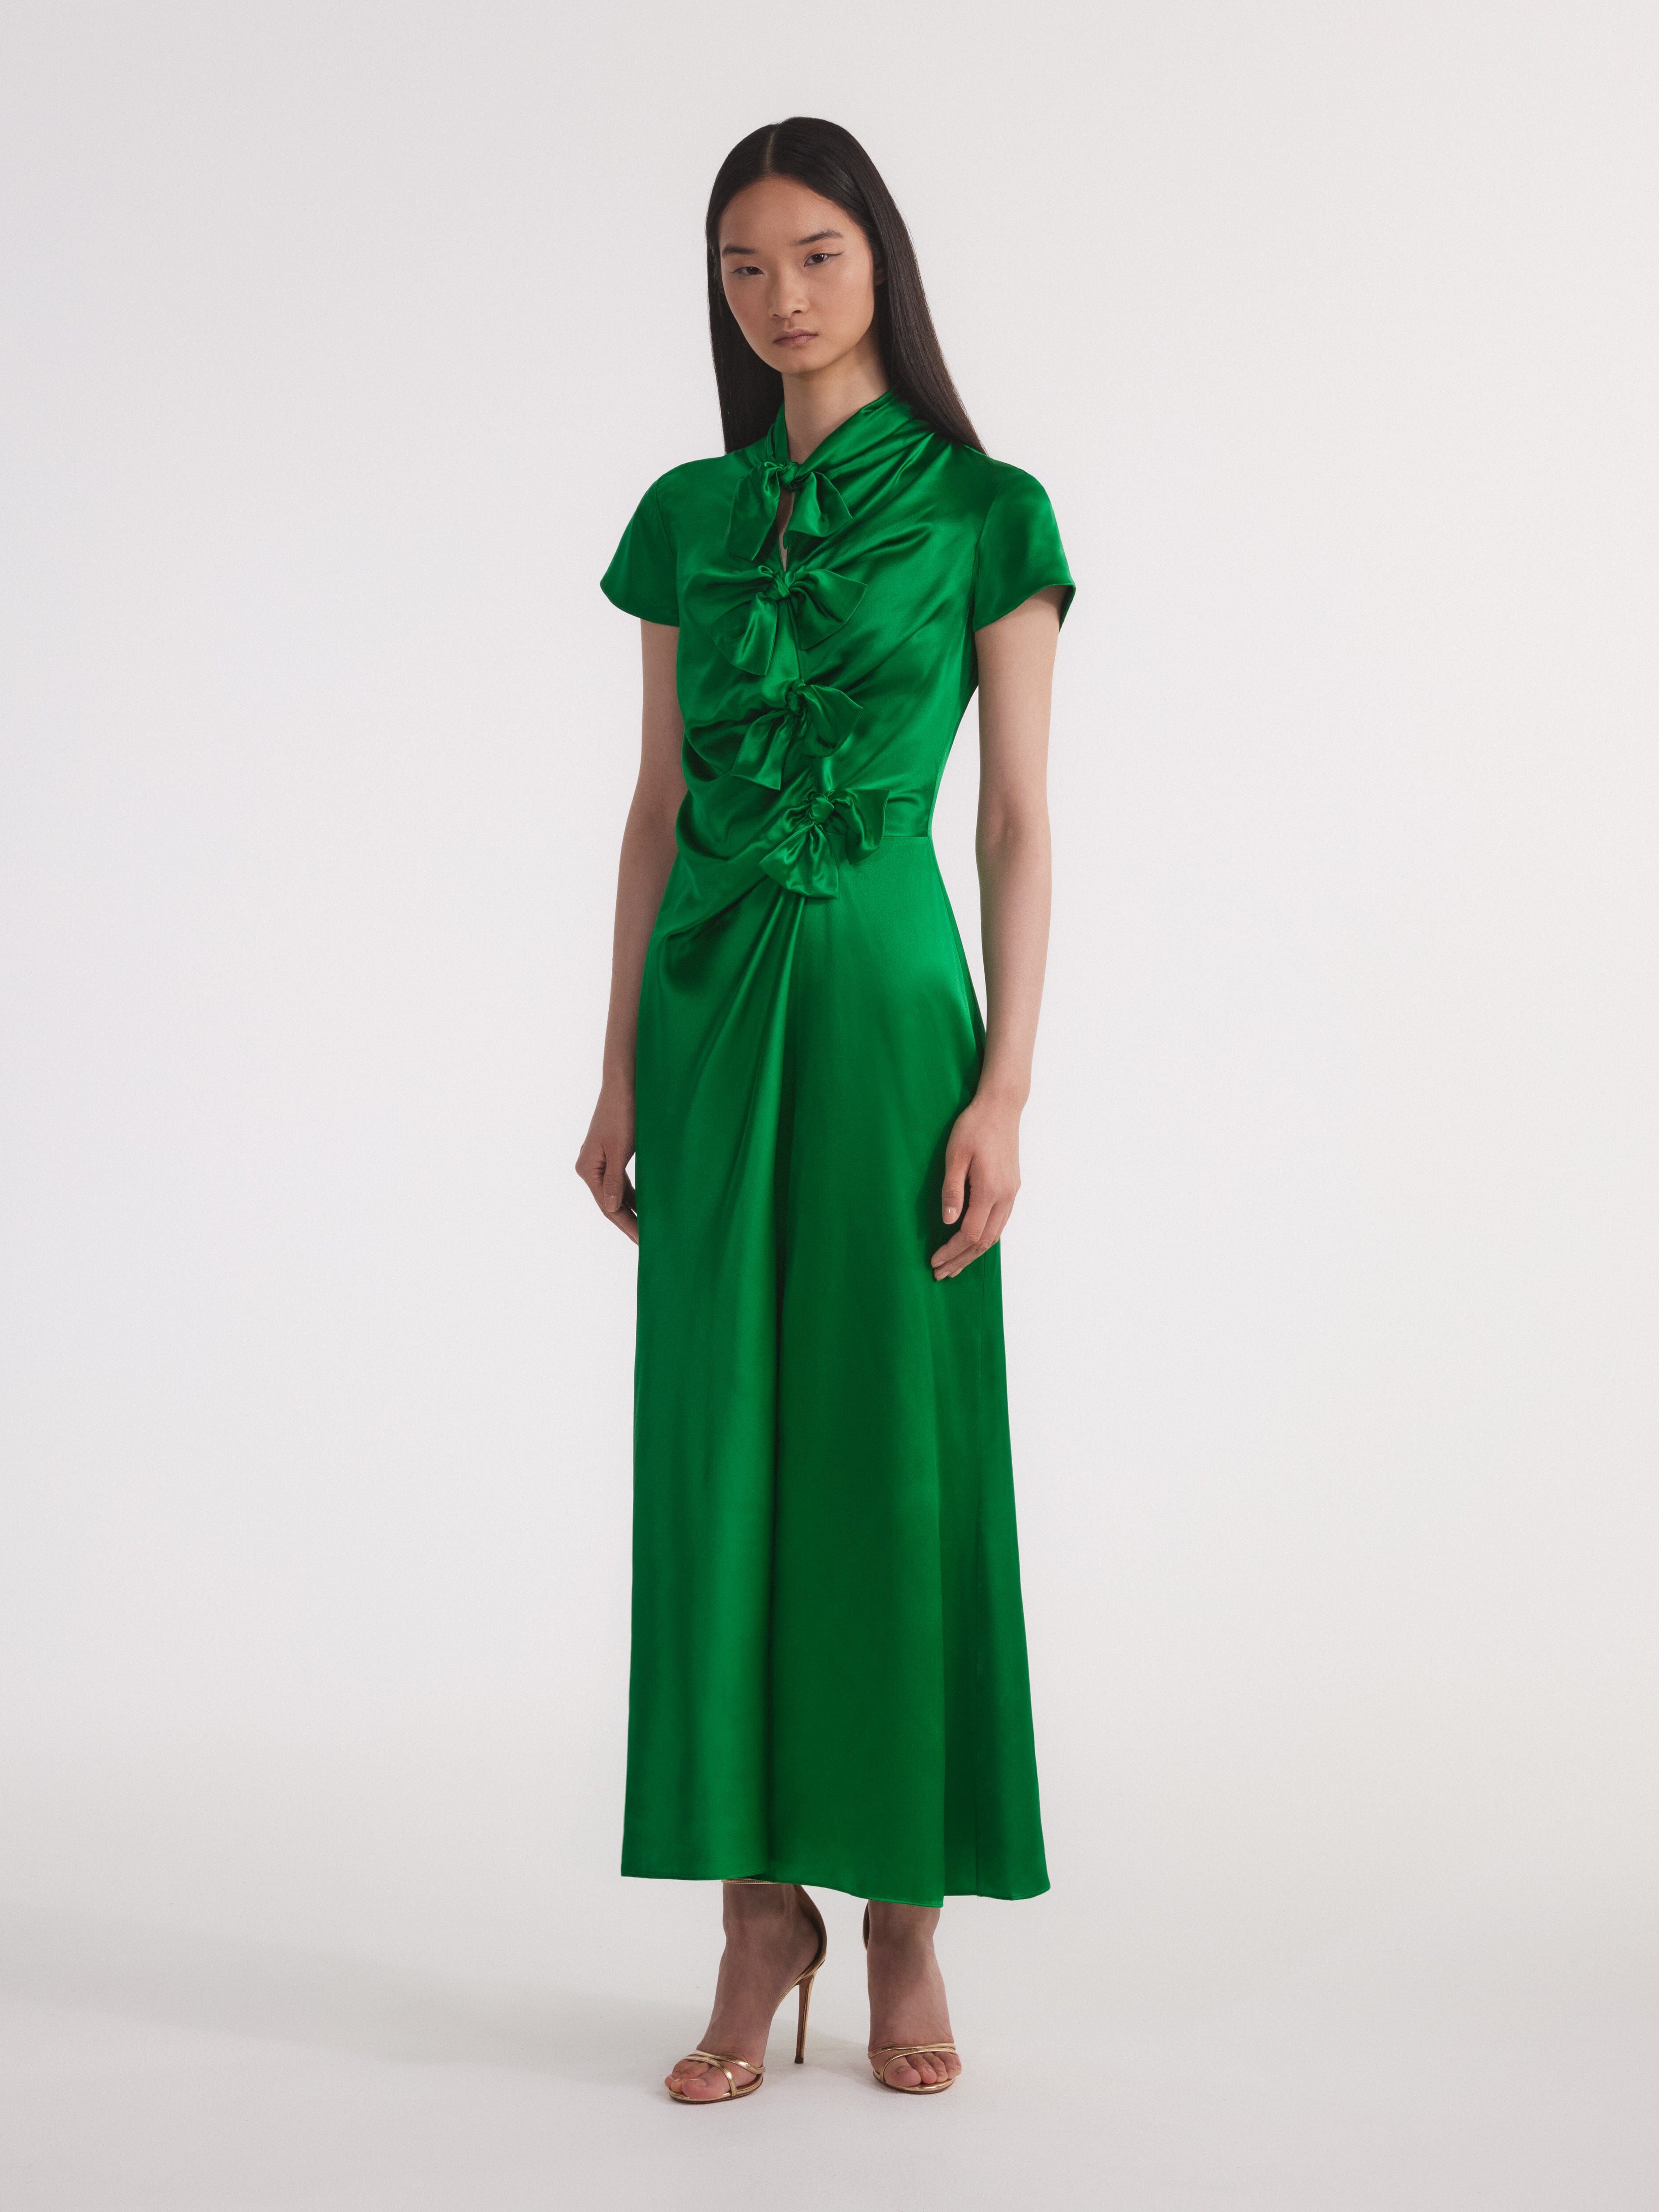 Kelly Dress in Emerald